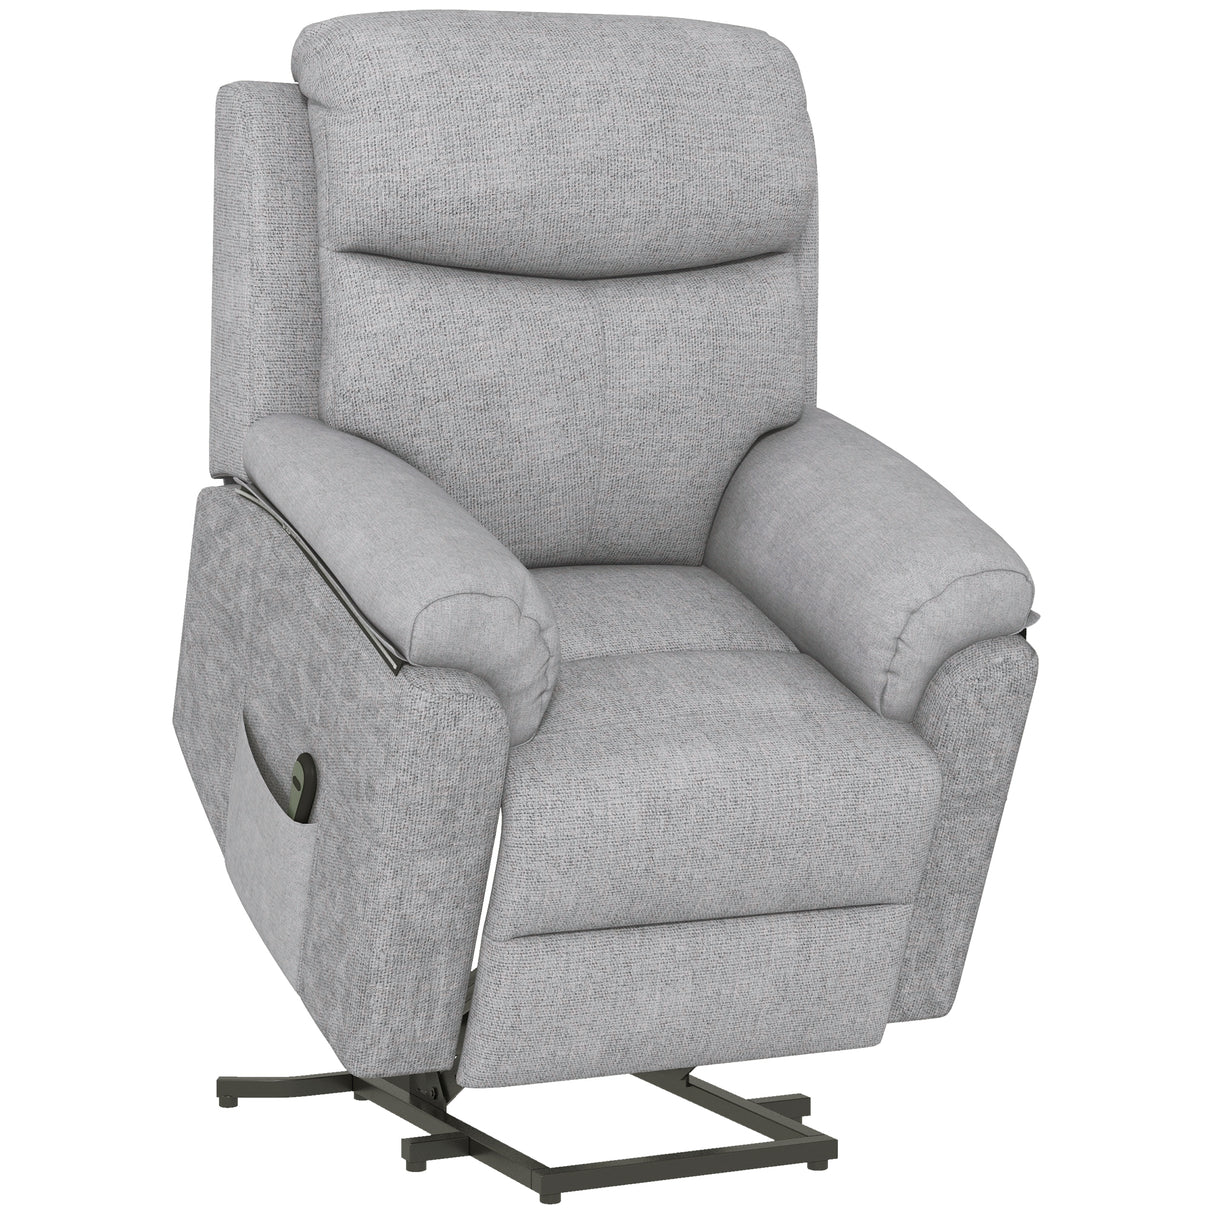 immagine-1-easycomfort-easycomfort-poltrona-alzapersona-reclinabile-con-poggiapiedi-in-poliestere-effetto-lino-83x89x102-cm-grigio